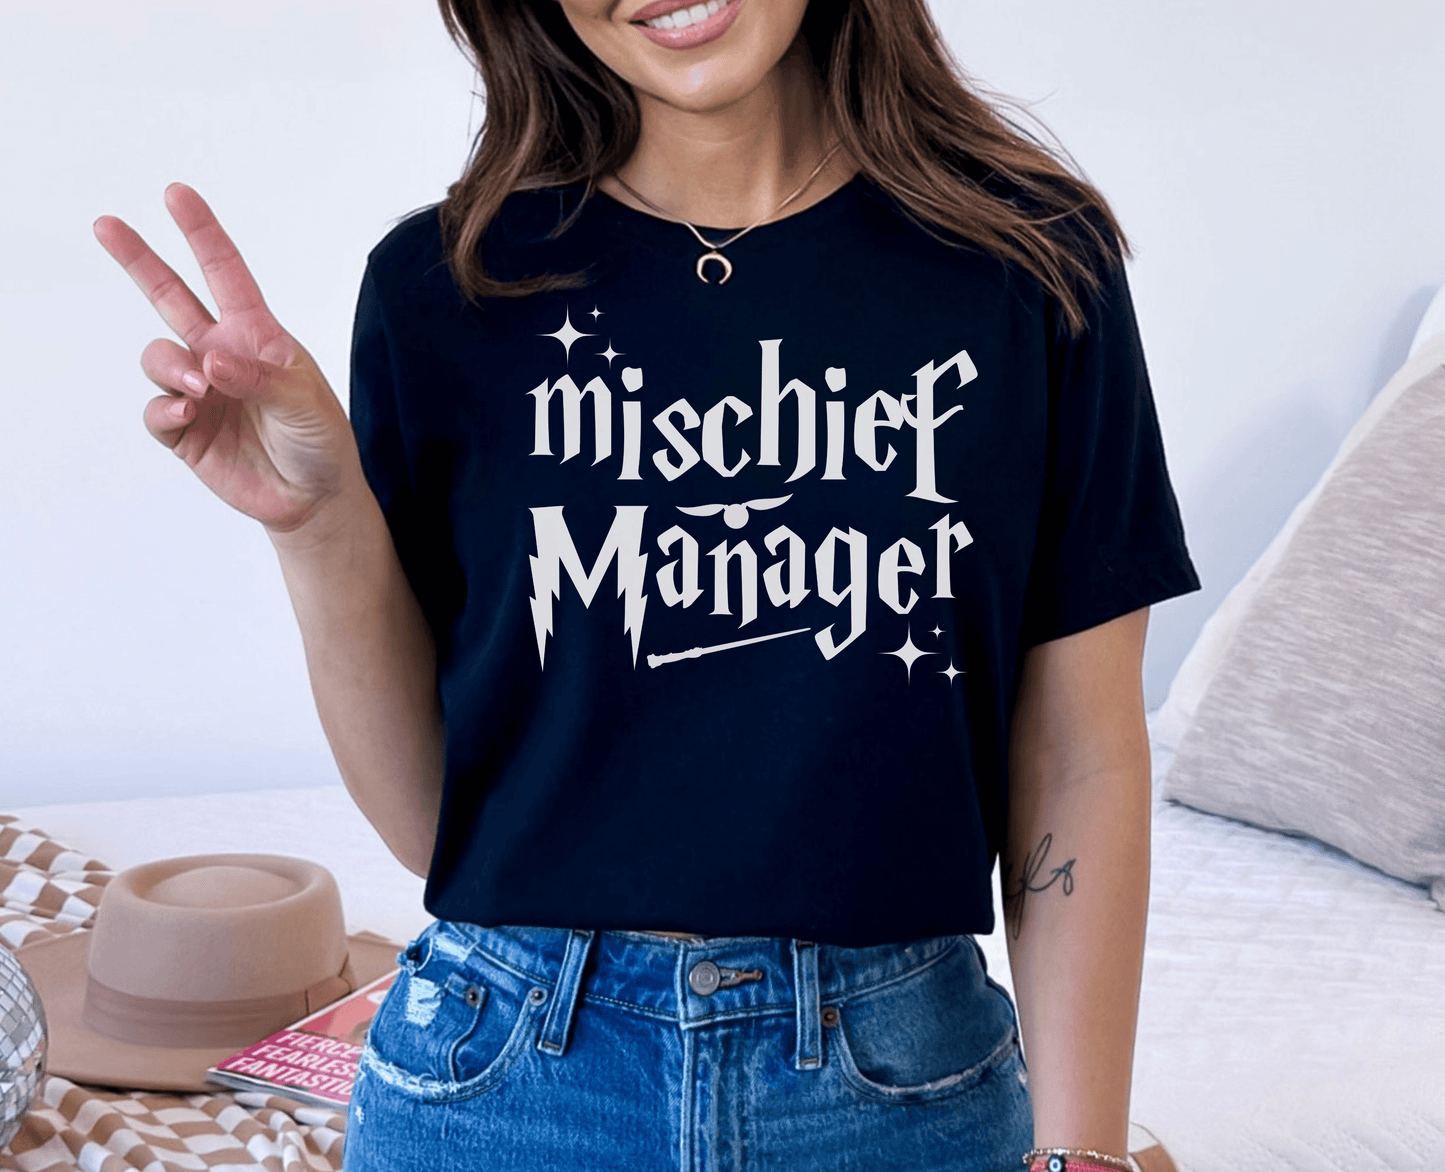 Mischief Manager Wizard Shirt - BentleyBlueCo